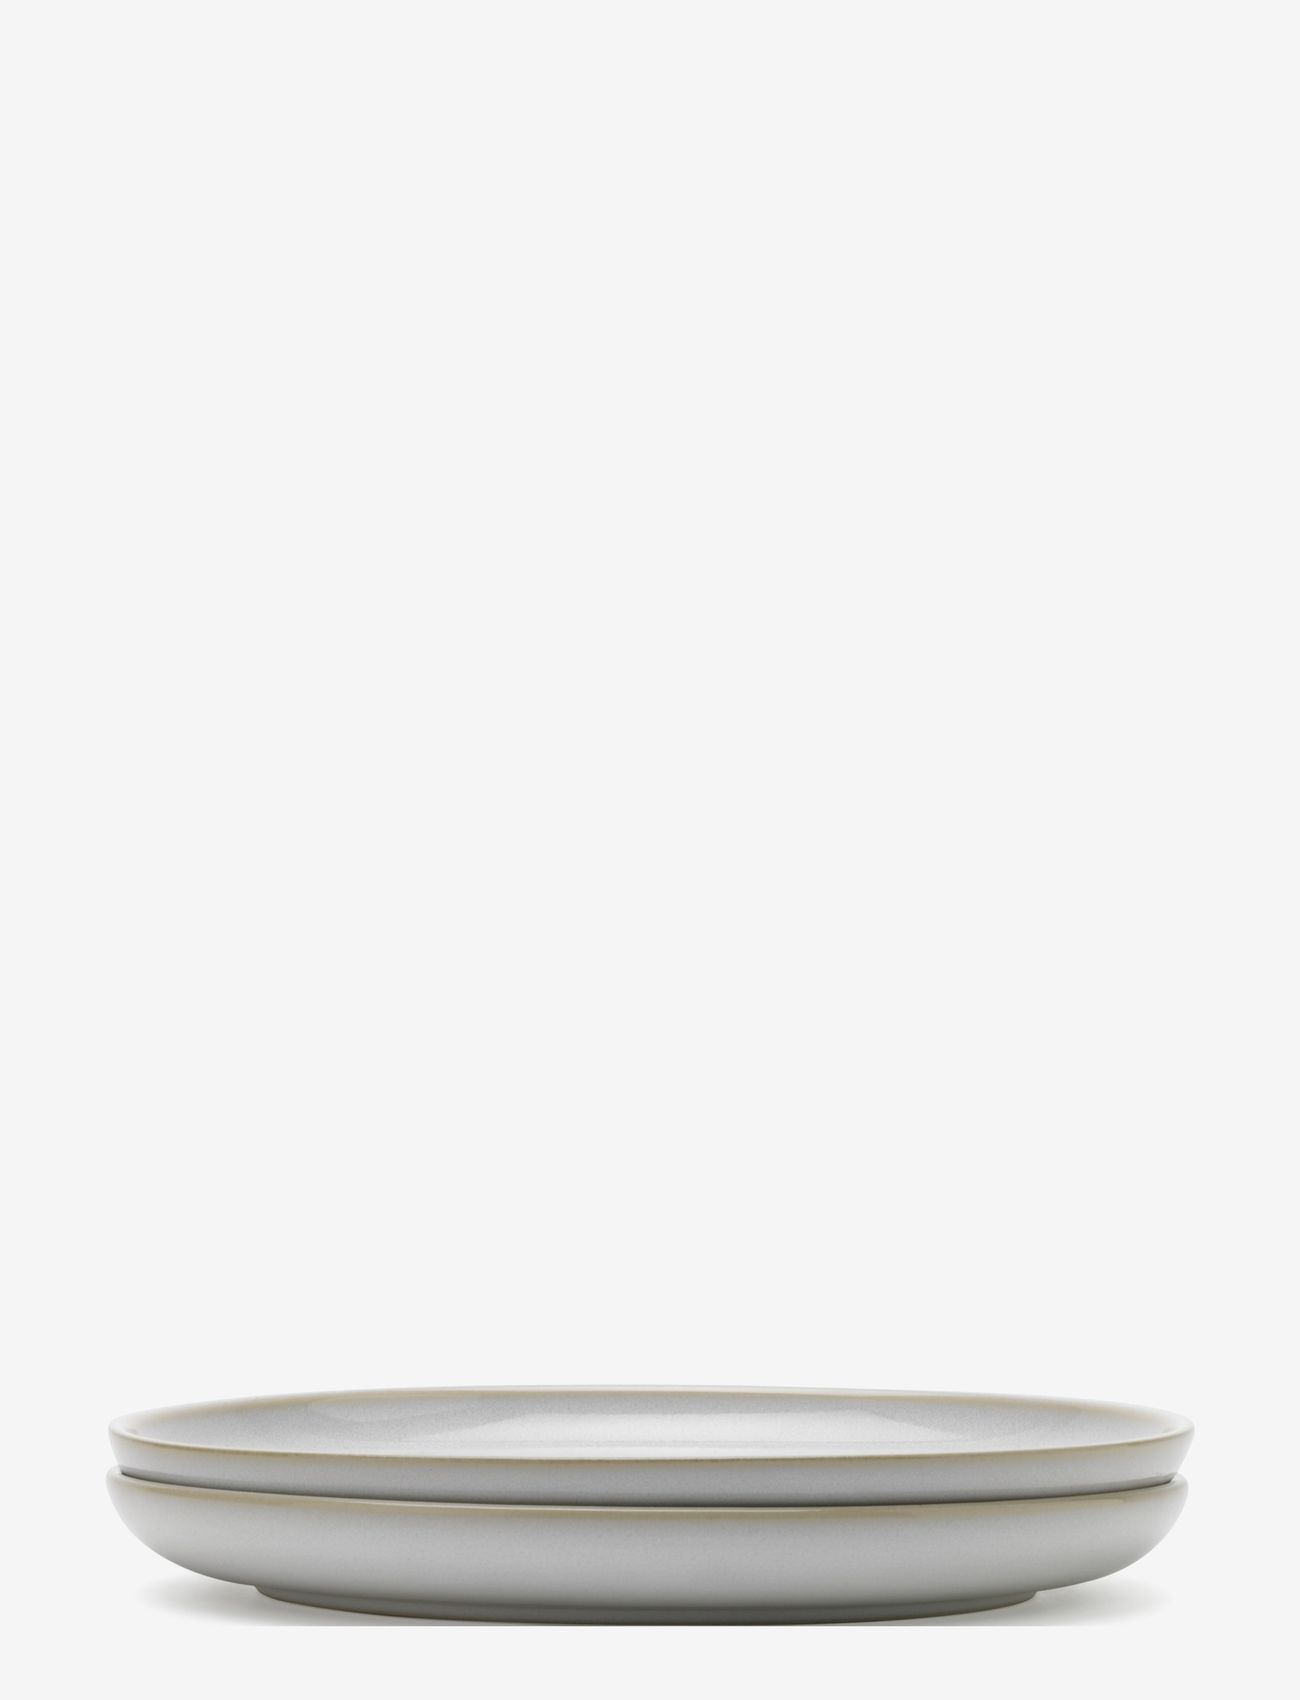 Knabstrup Keramik - Tavola plate, 2 pcs. - najniższe ceny - white - 0